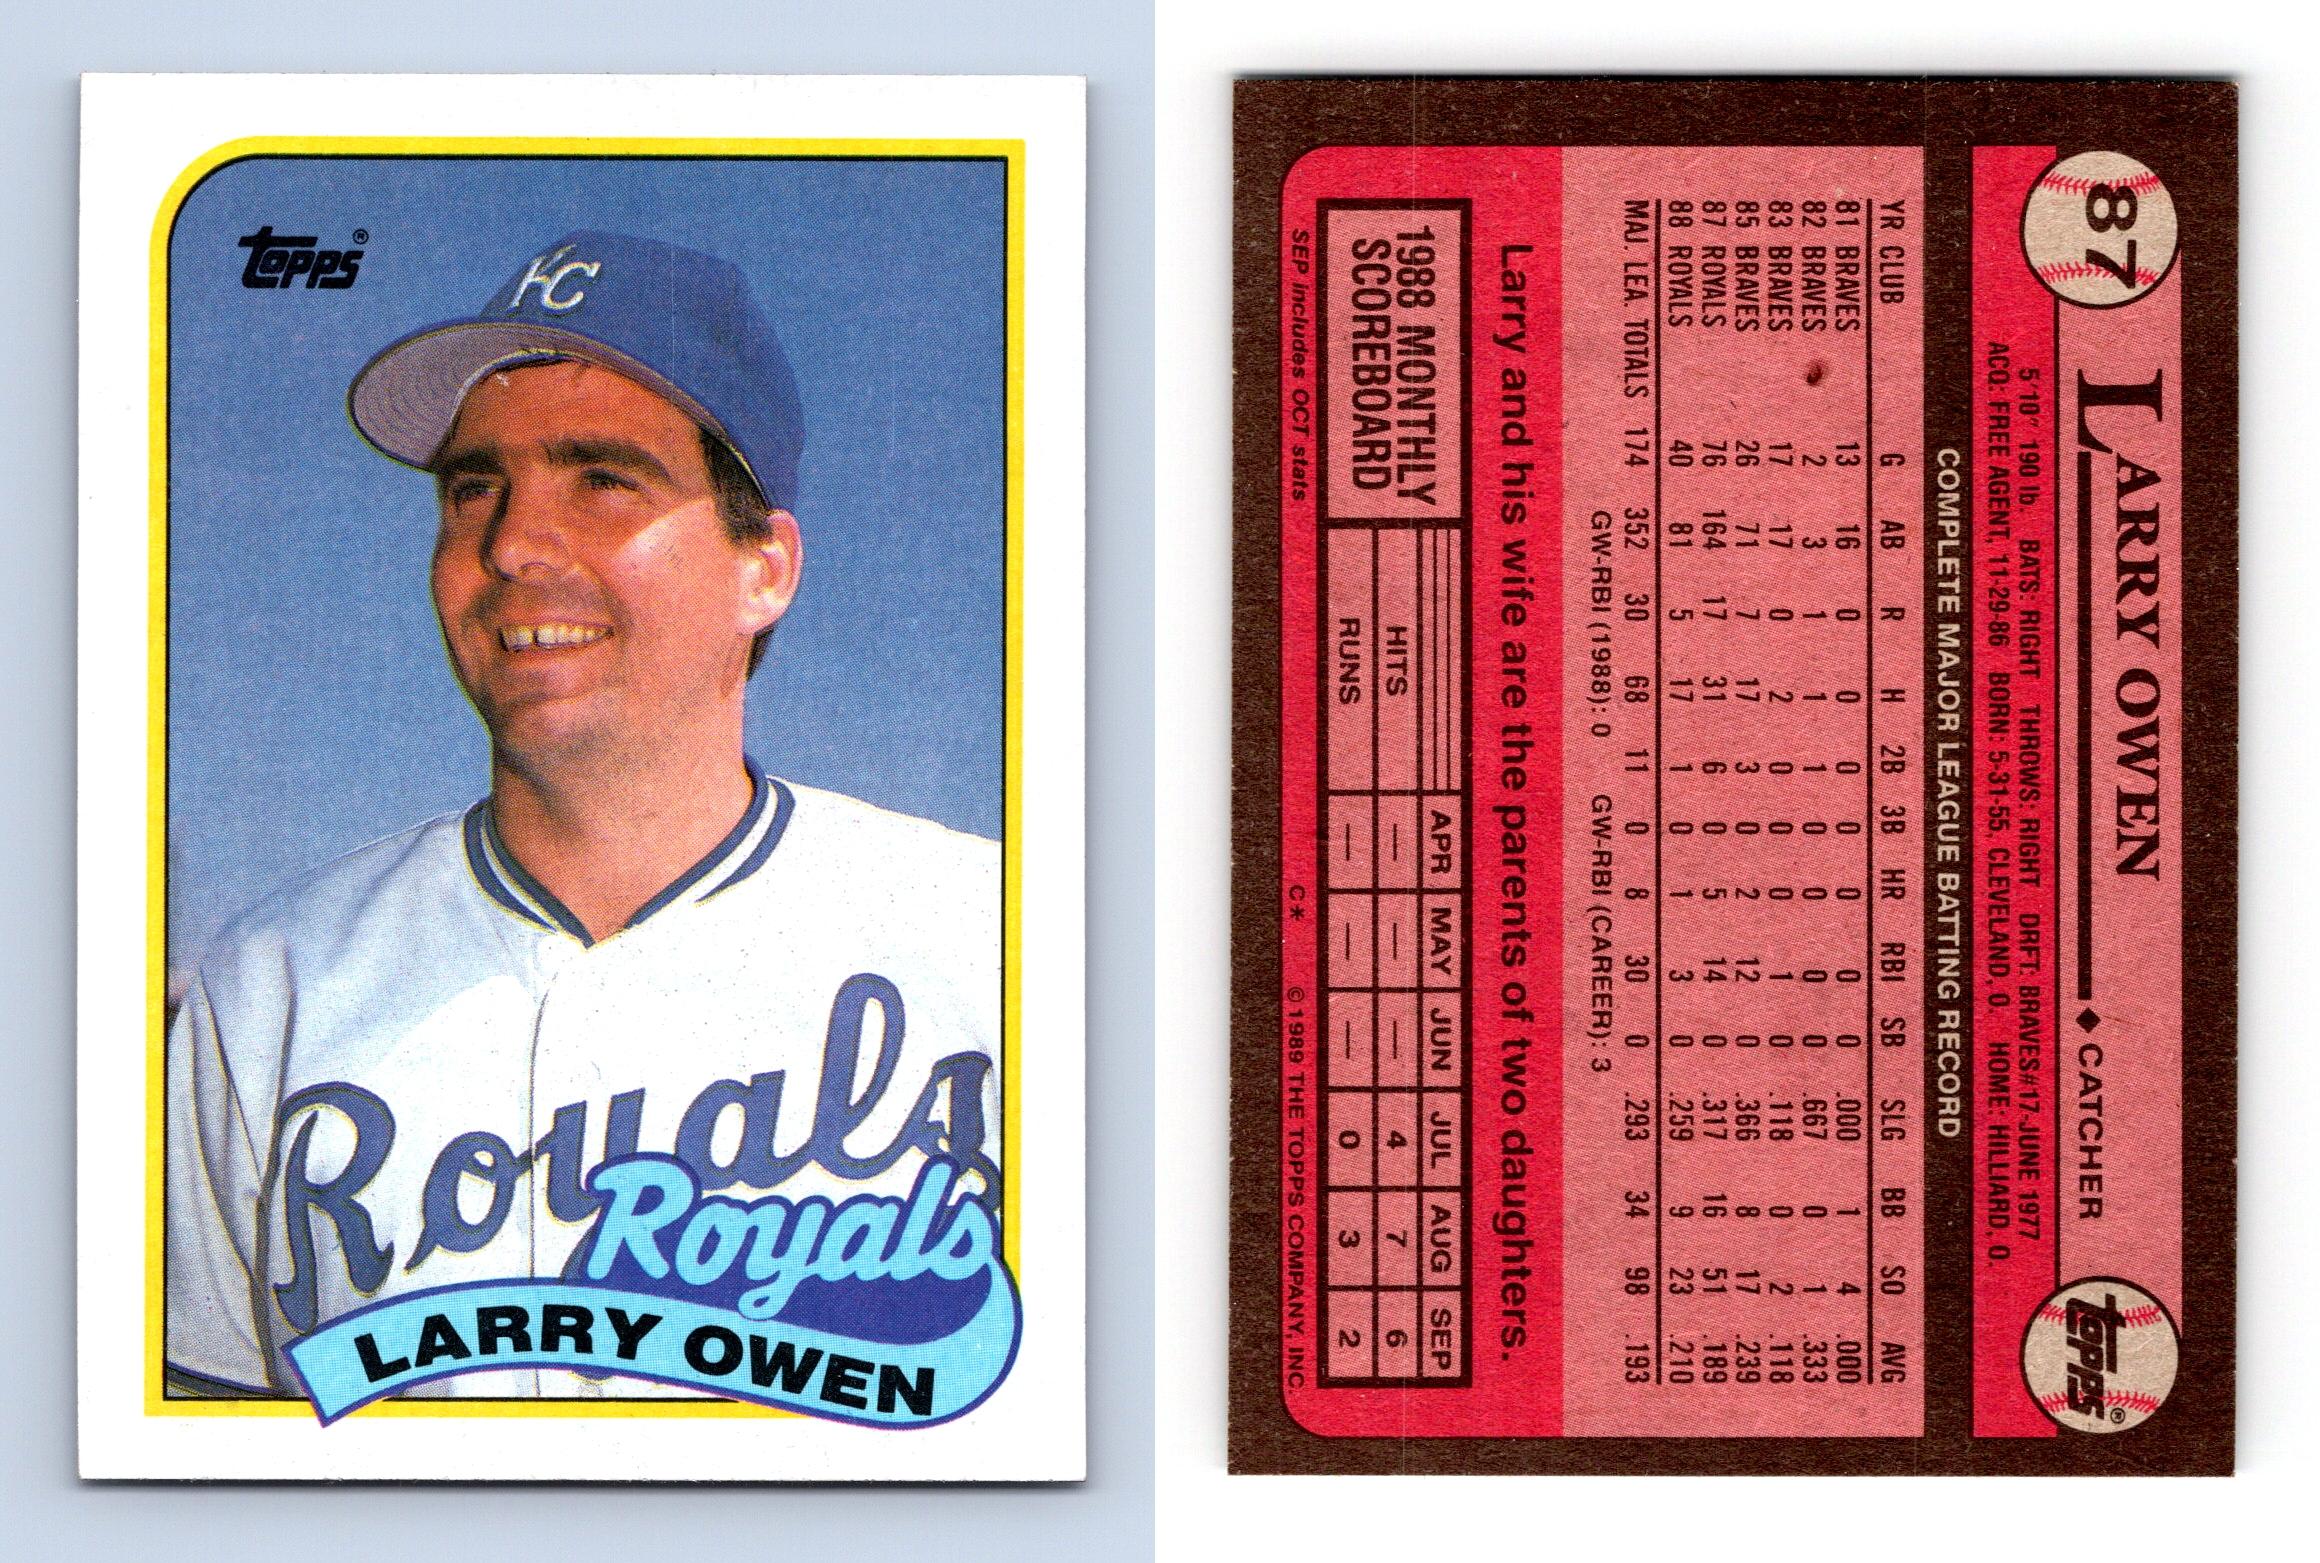 Alan Trammell [All Star] #400 1989 Topps Baseball Card